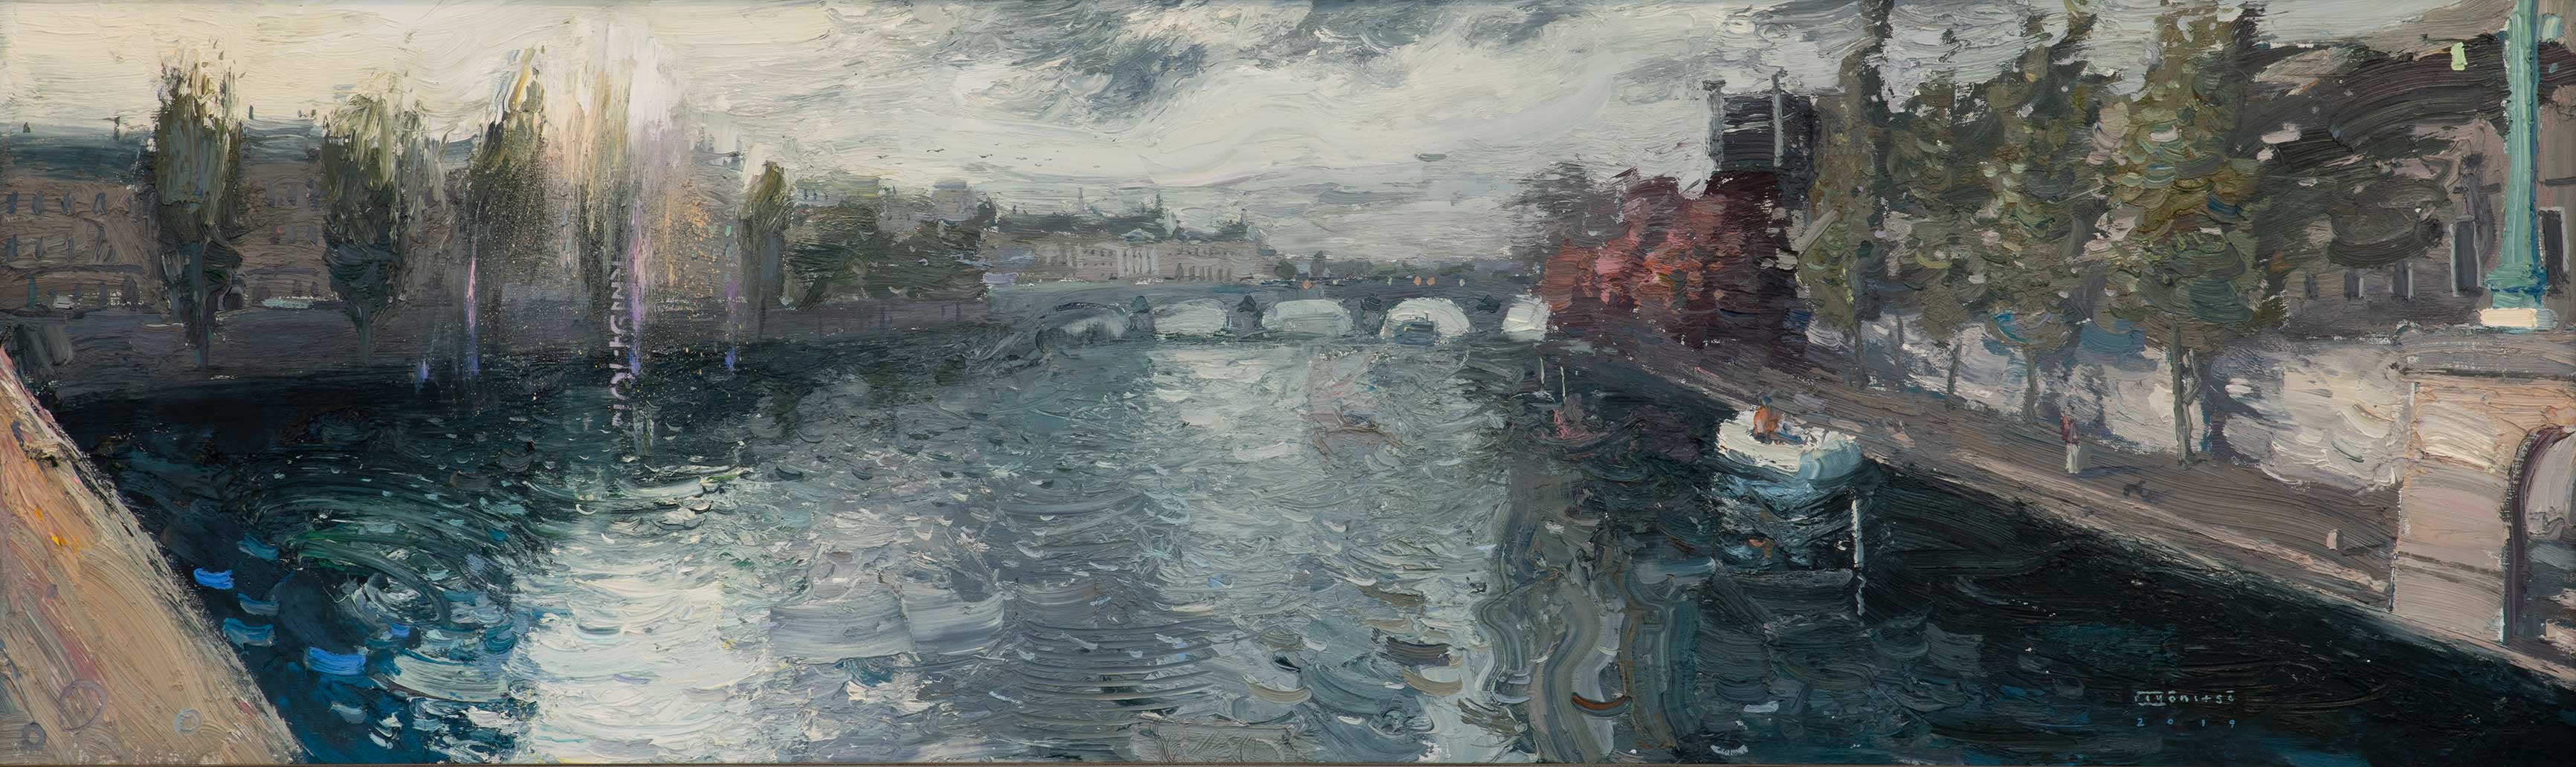 Morning. Paris - 1, Sergey Kiyanitsa, Buy the painting Oil